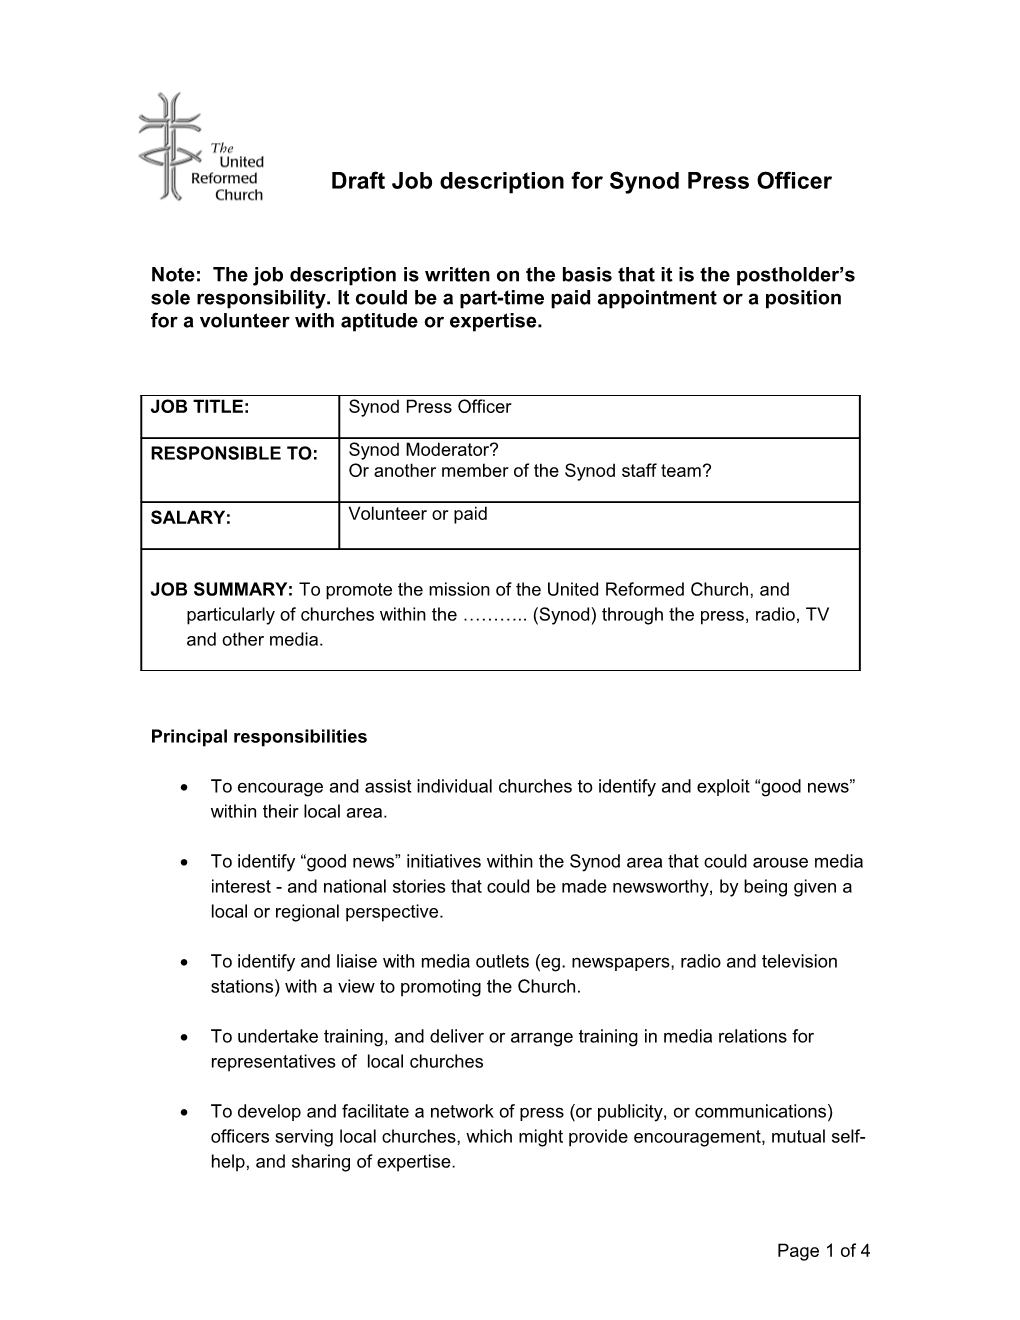 Draft Job Description for Synod Press Officer